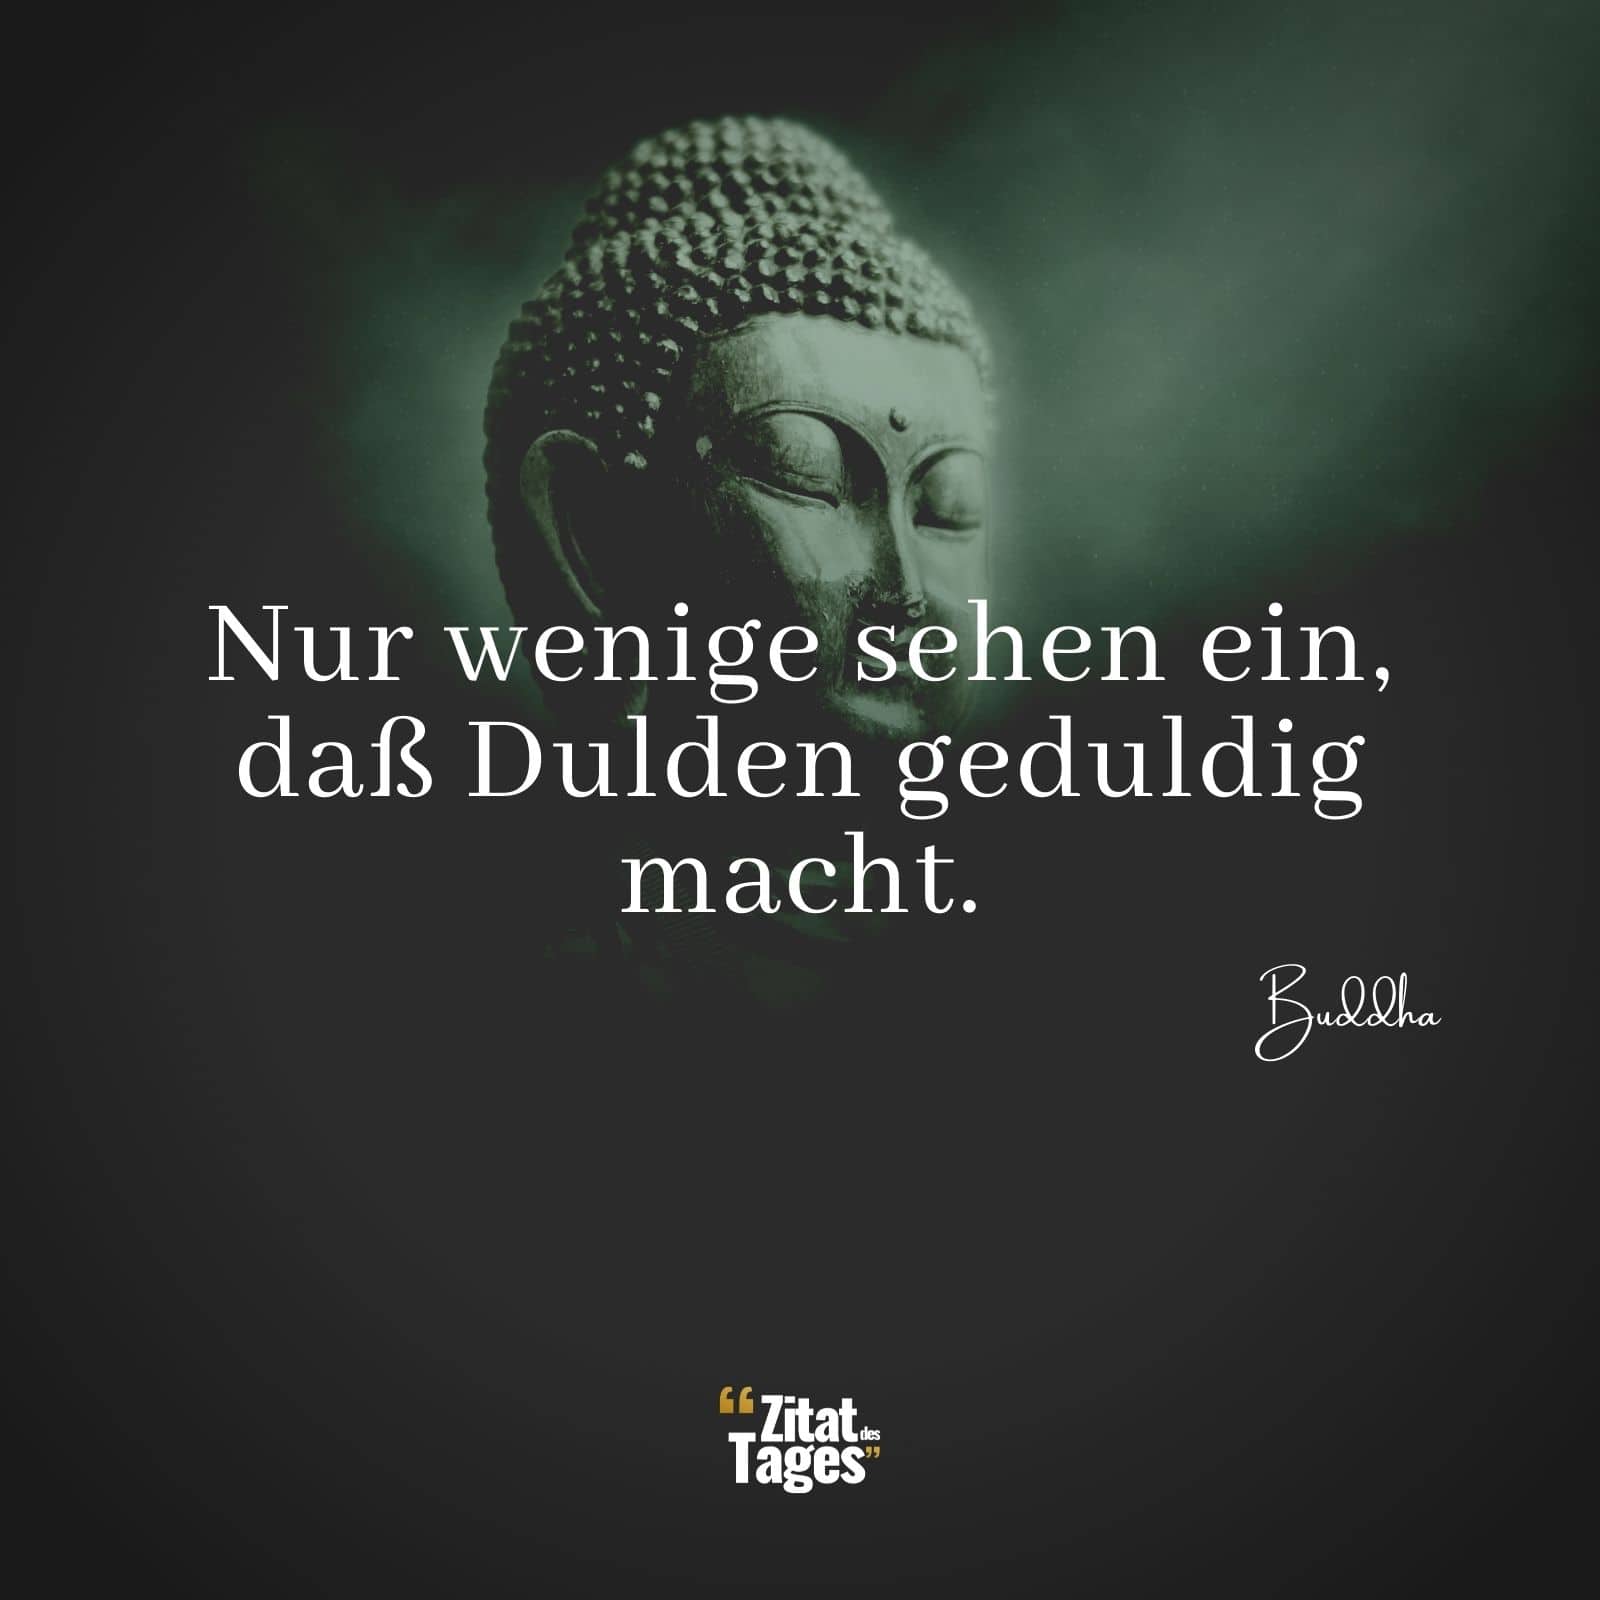 Nur wenige sehen ein, daß Dulden geduldig macht. - Buddha